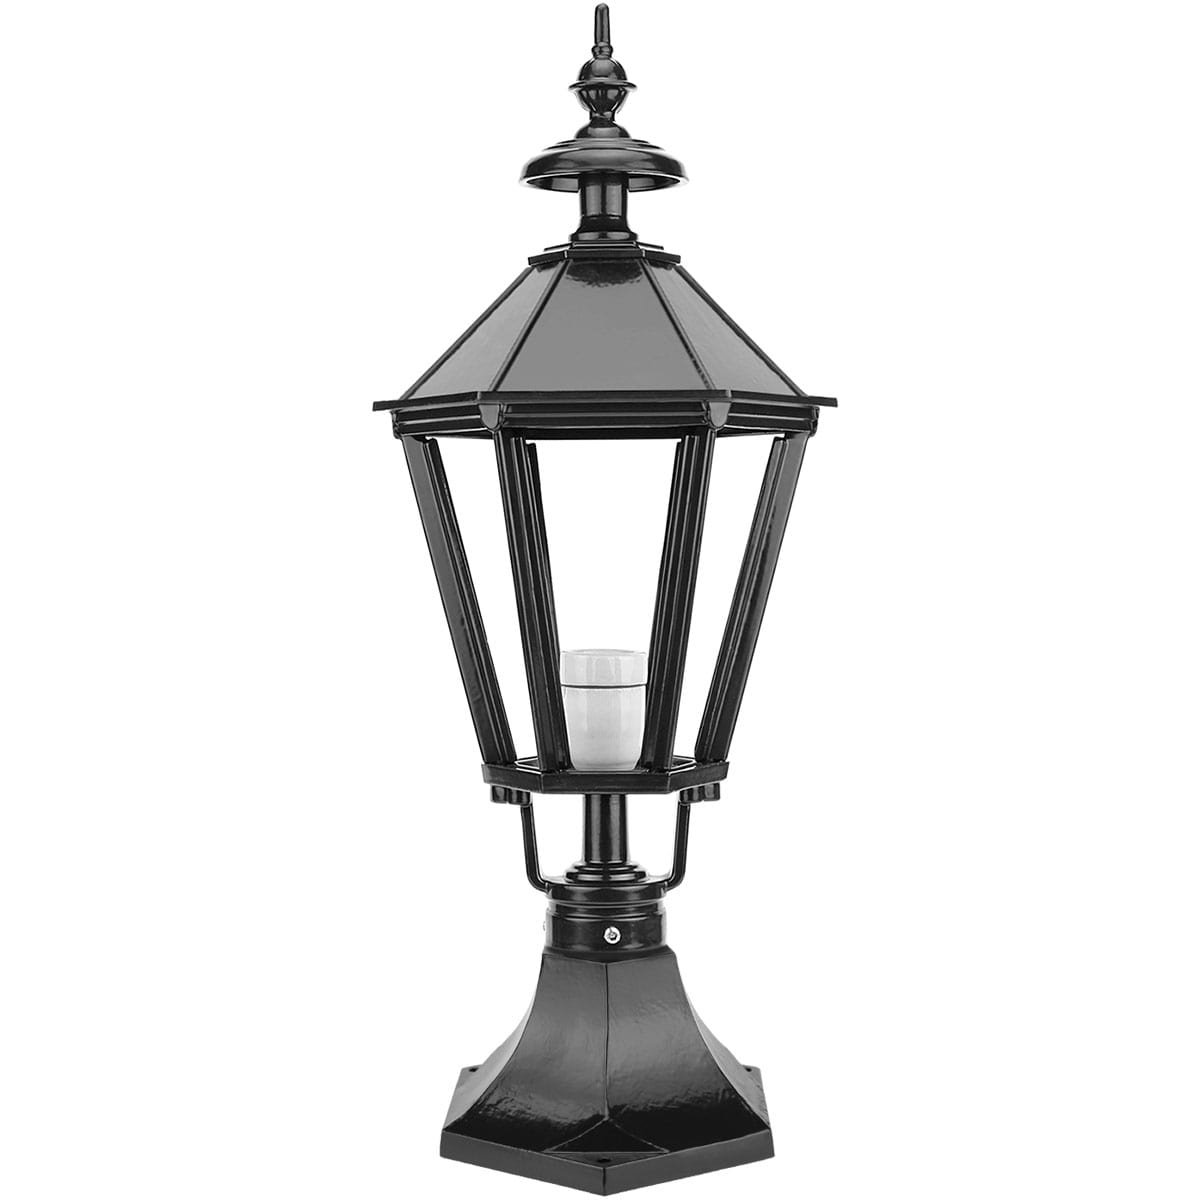 Lampe d'extérieur debout Vinkeveen - 64 cm